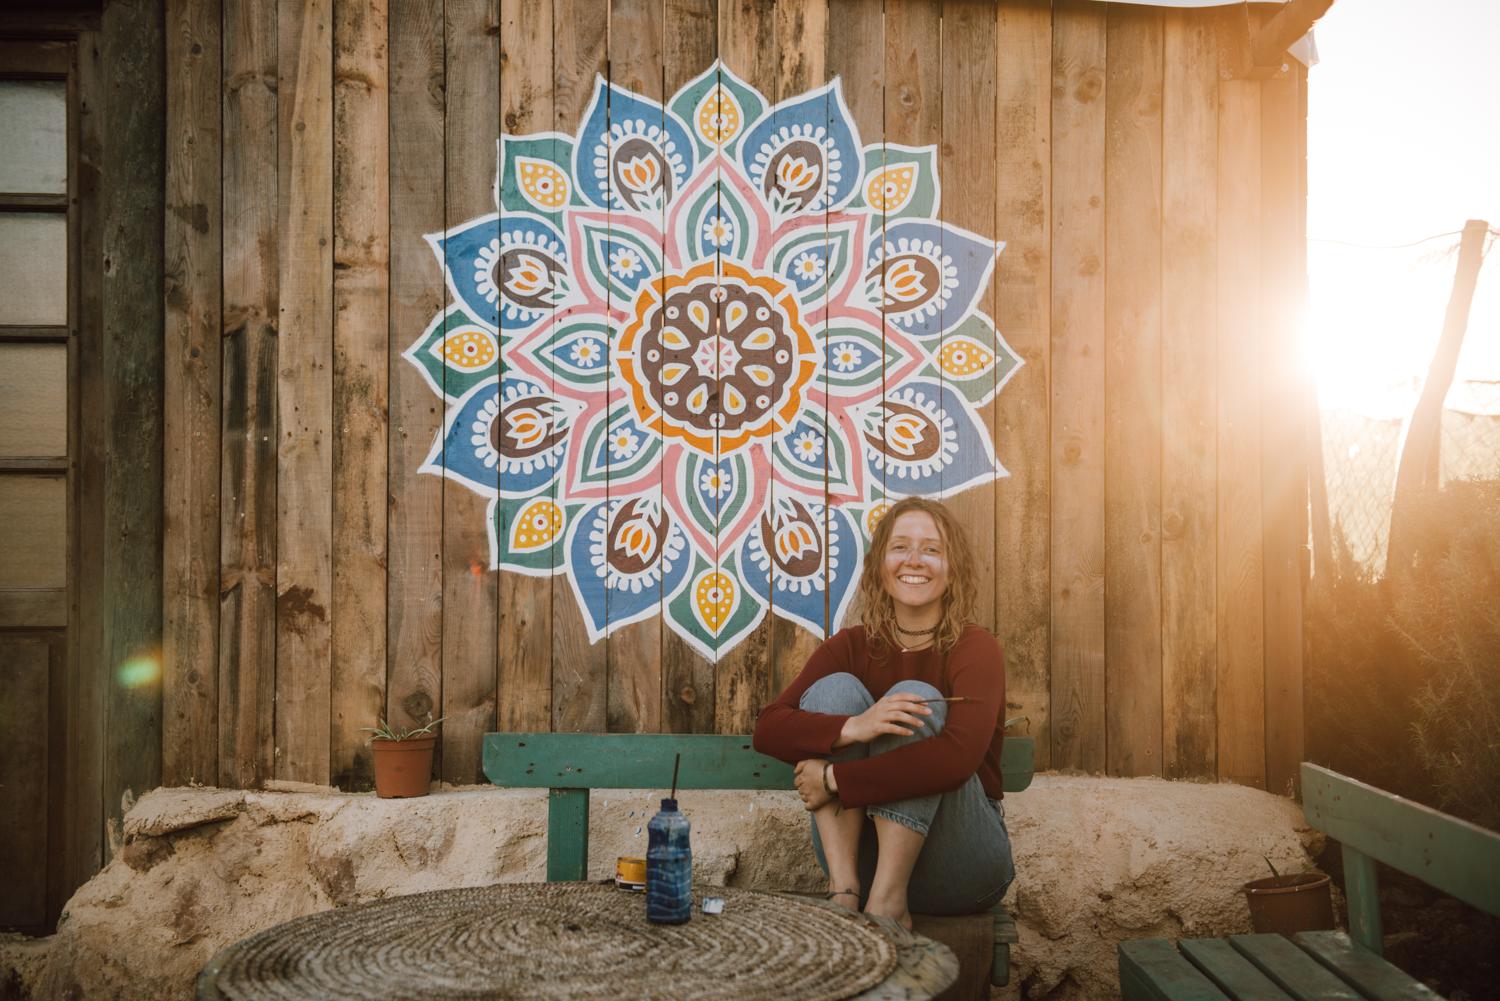 Buntes handgemaltes Mandala auf einer Holzwand darunter sitzt die Künstlerin. Hinter dem Gebäude geht die Sonne unter.